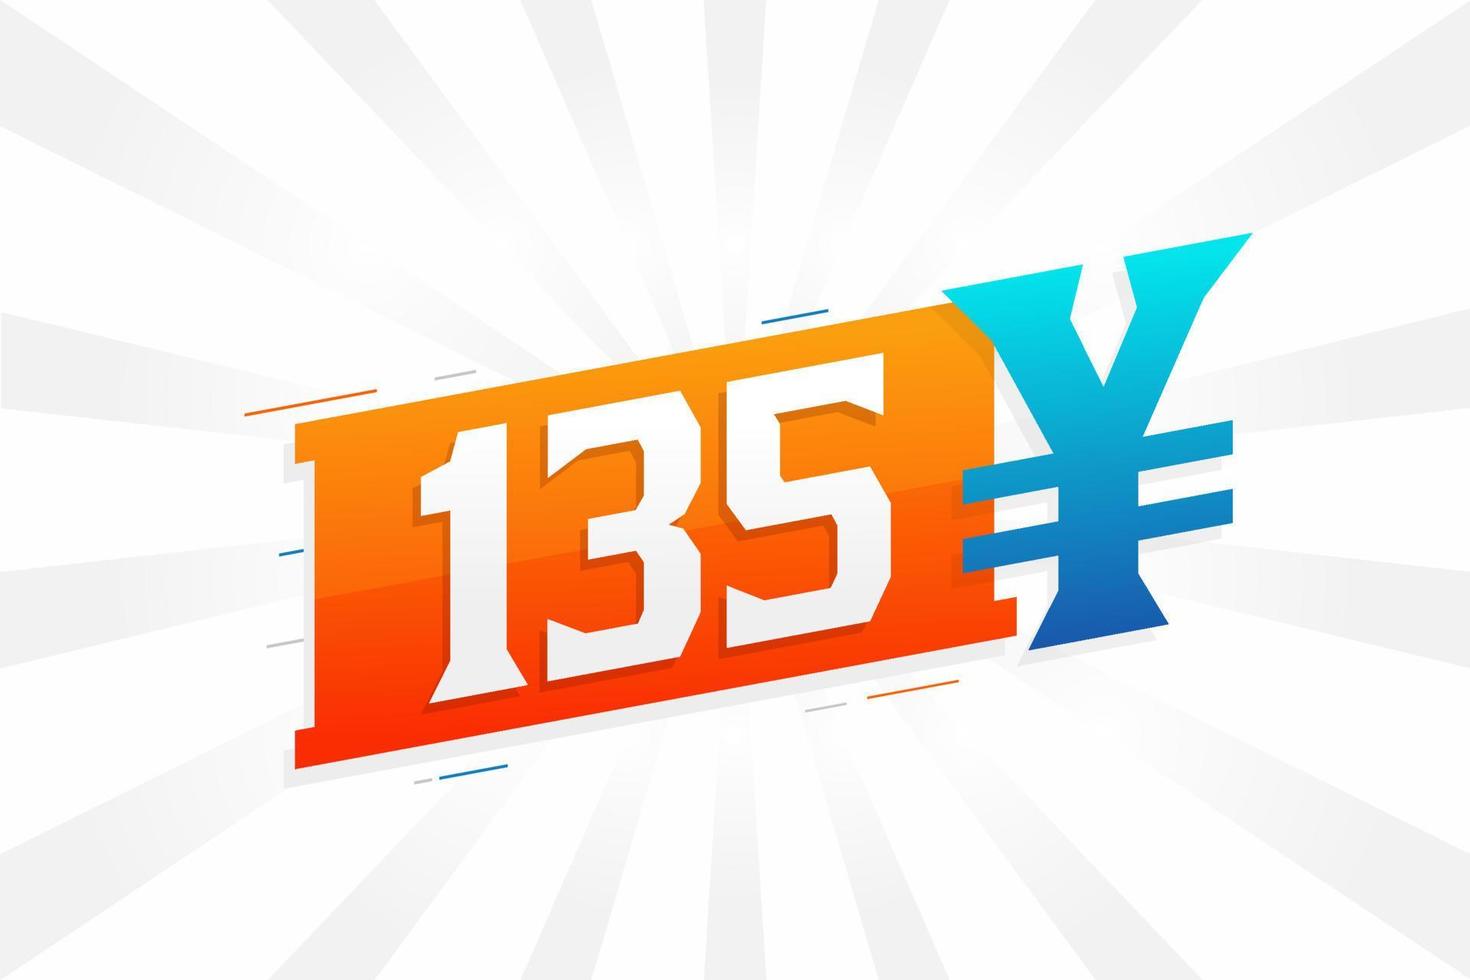 Símbolo de texto de vetor de moeda chinesa de 135 yuan. Vetor de estoque de dinheiro de moeda japonesa de 135 ienes